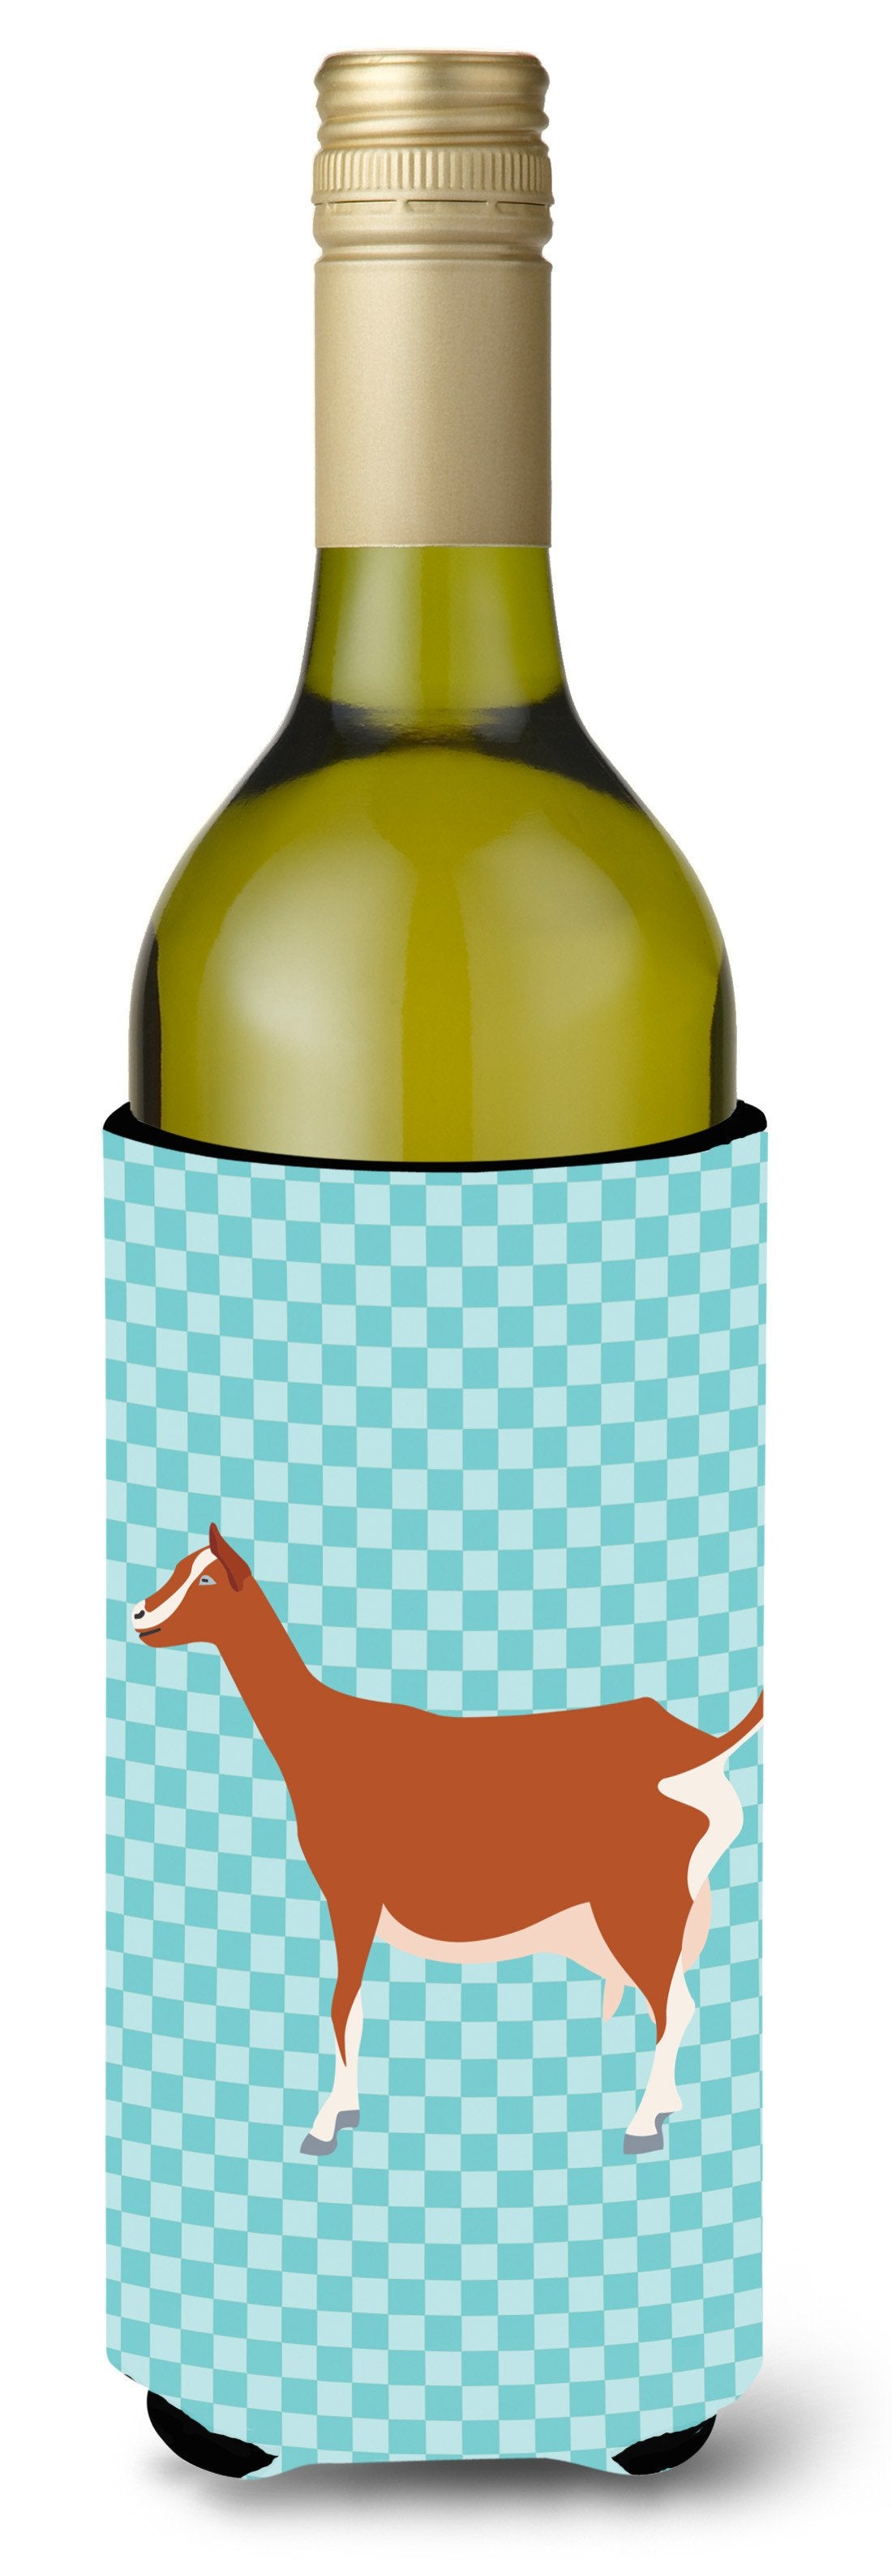 Toggenburger Goat Blue Check Wine Bottle Beverge Insulator Hugger BB8055LITERK by Caroline's Treasures